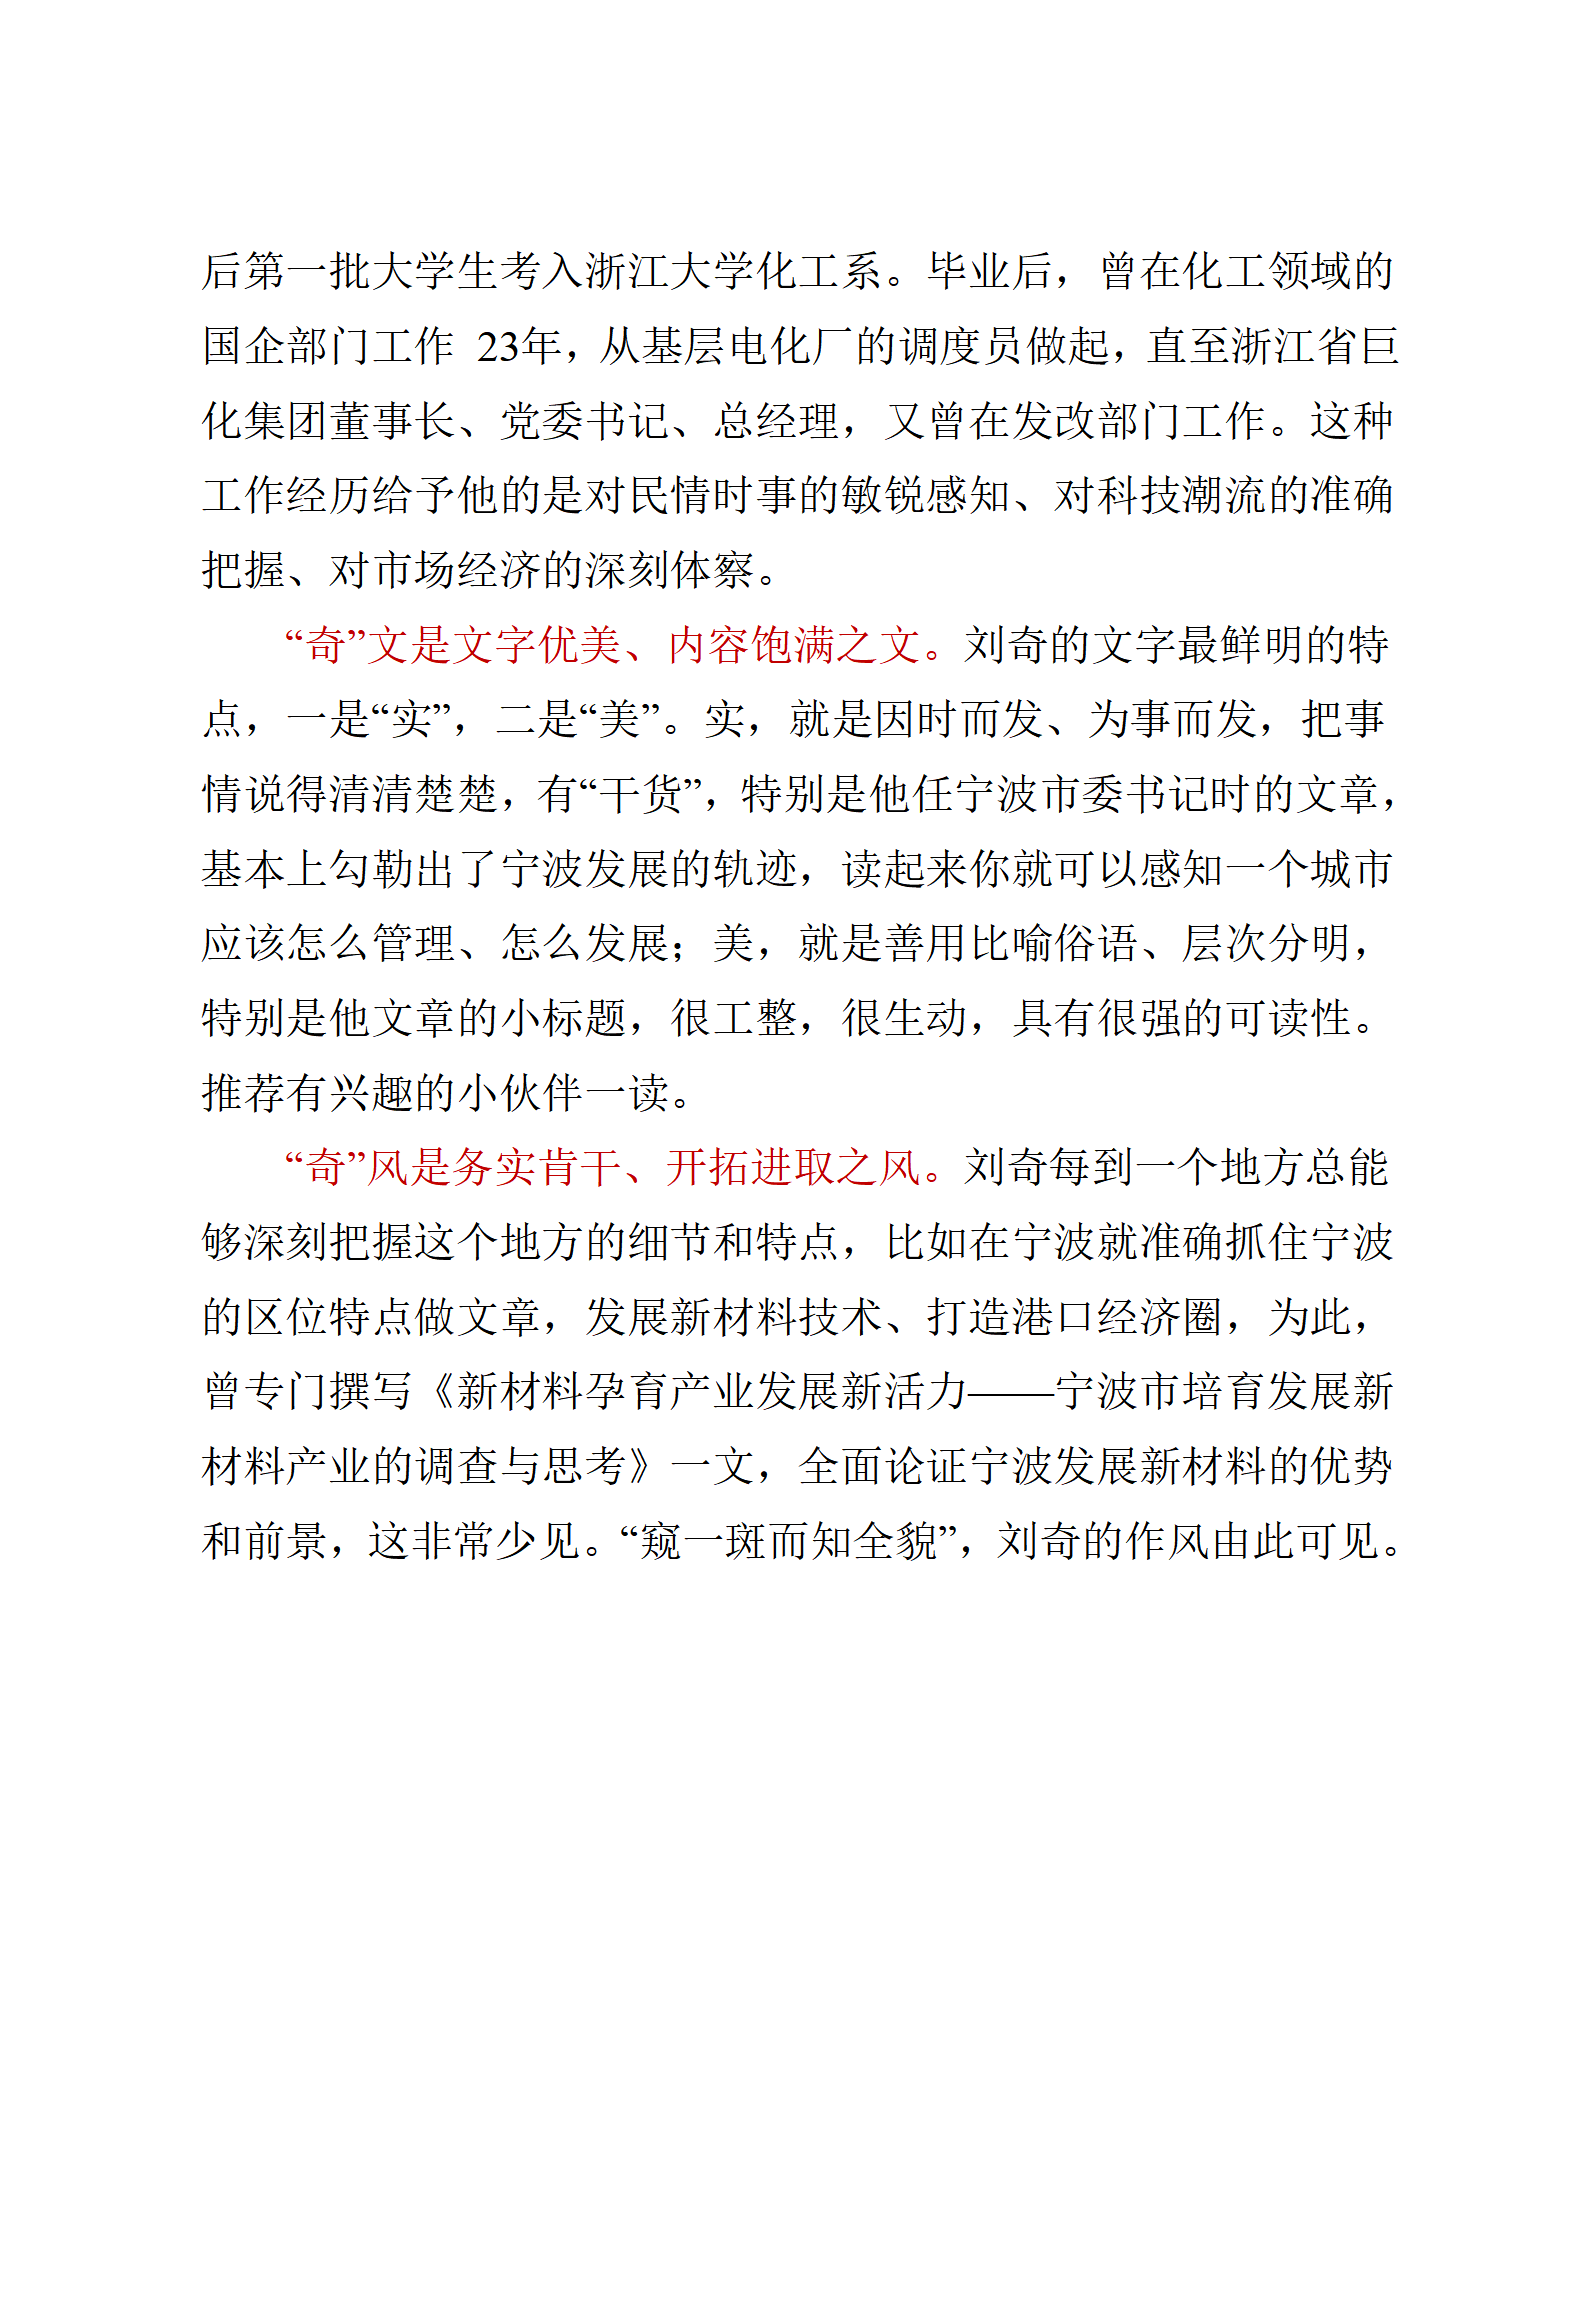 【文集】江西省委书记刘奇讲话精选汇编（705页）_05.png